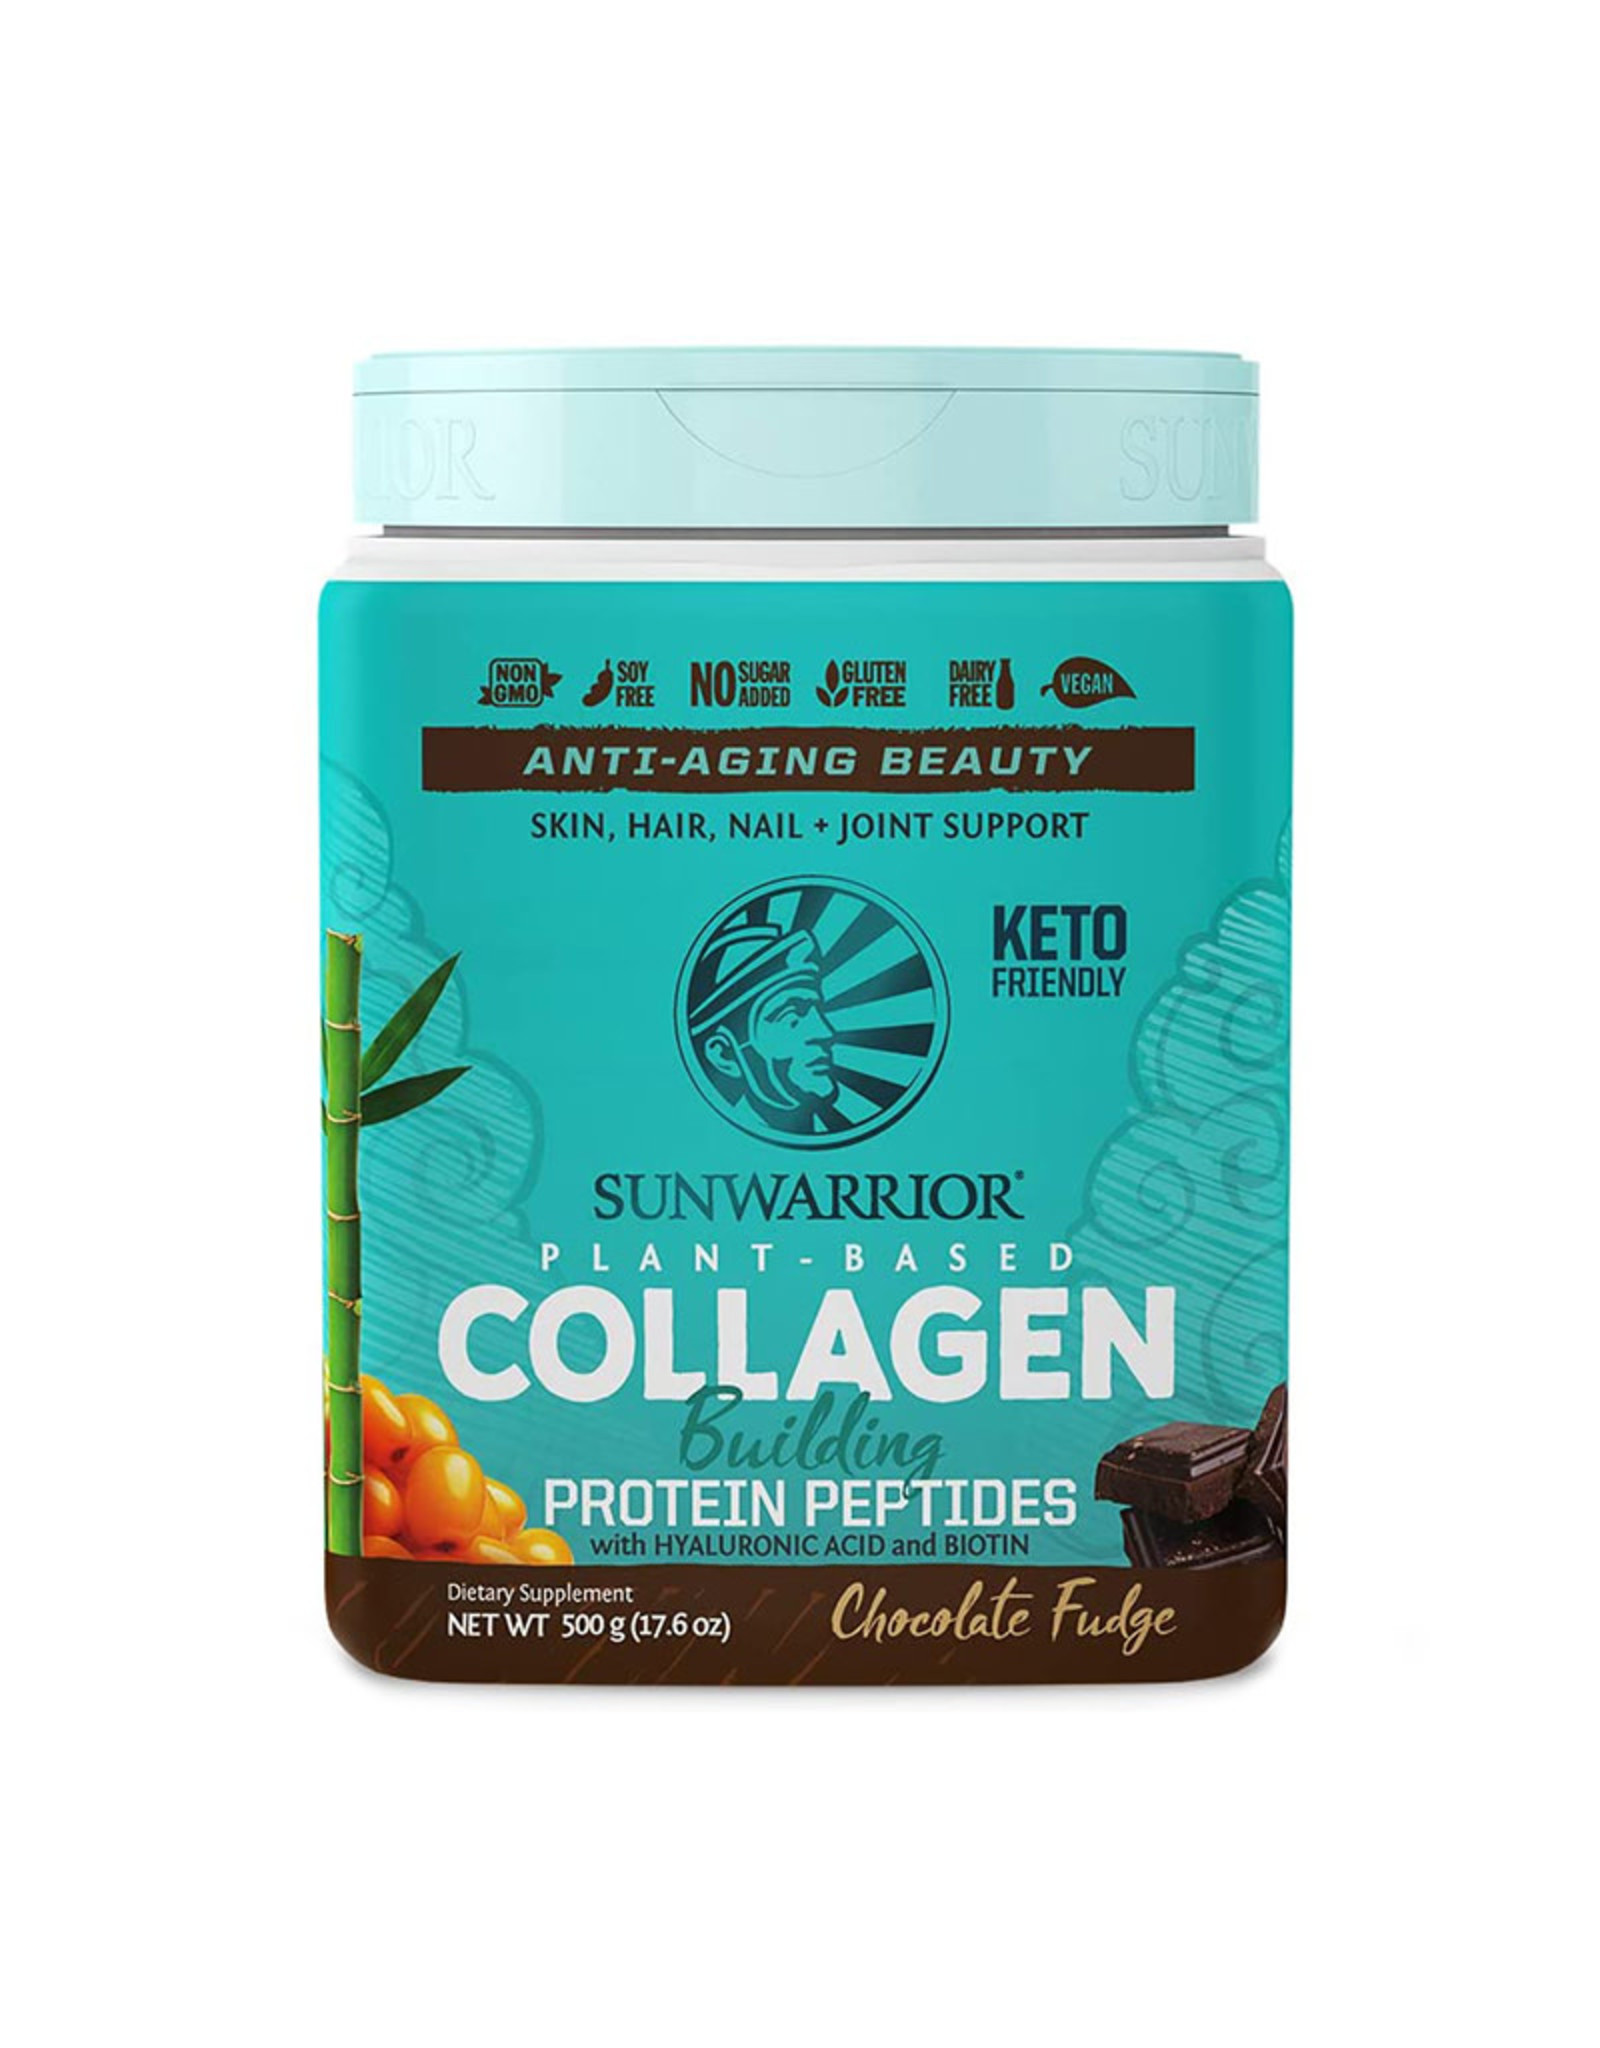 SunWarrior Sunwarrior - Collagen Building Protein Peptides, Chocolate Fudge (500g)